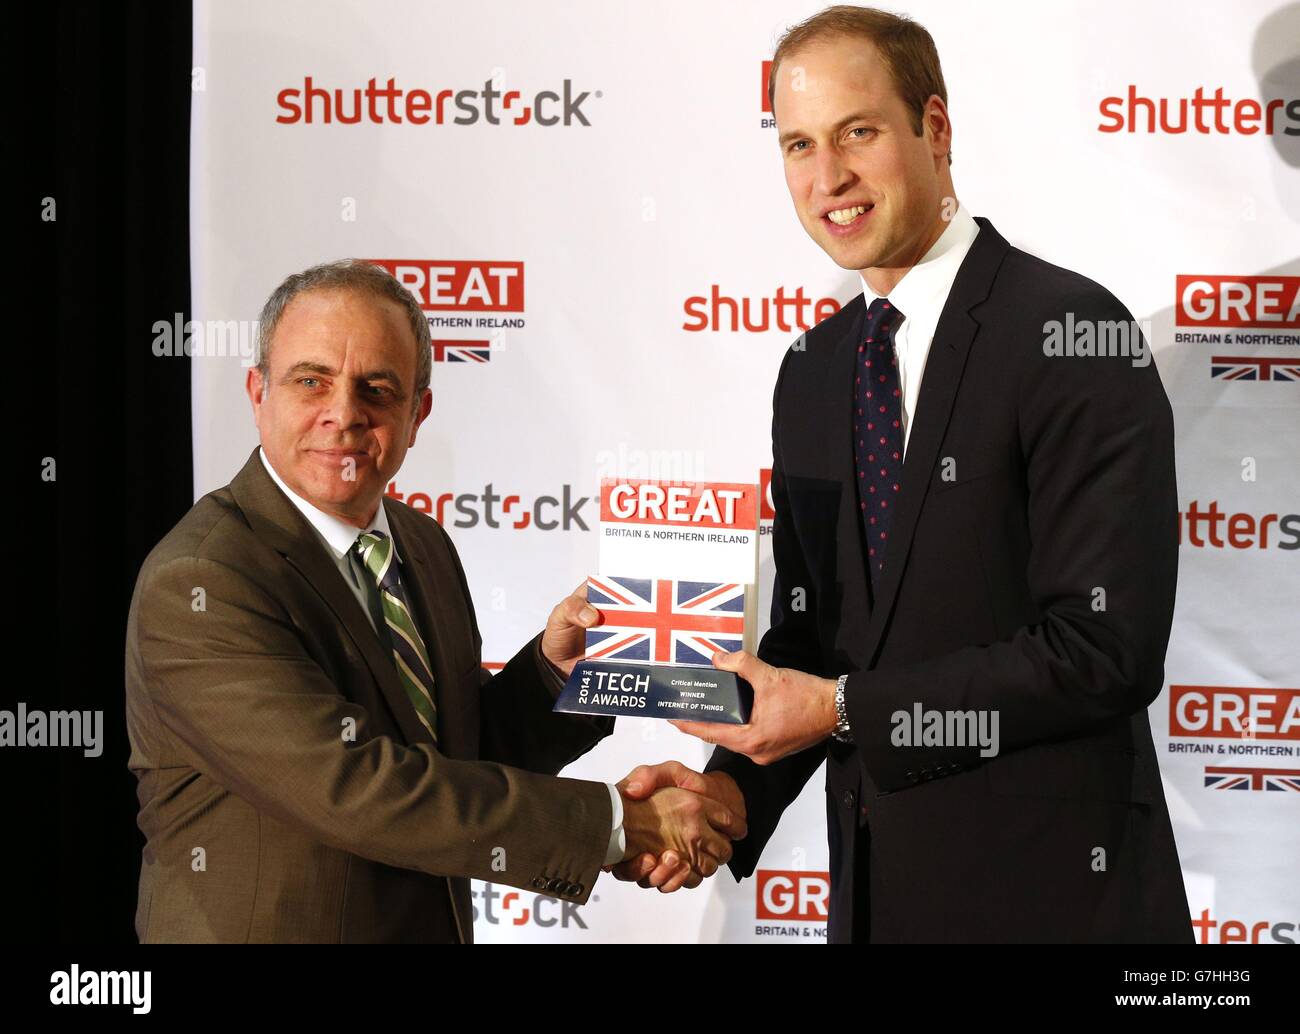 Le Duke of Cambridge (à droite) remet le prix Internet of Things UK Trade and Industry à Sean Morgan, de mention critique, lors d'une visite aux bureaux Shutterstock de l'Empire State Building, à New York, lors d'une visite de 3 jours aux États-Unis. Banque D'Images